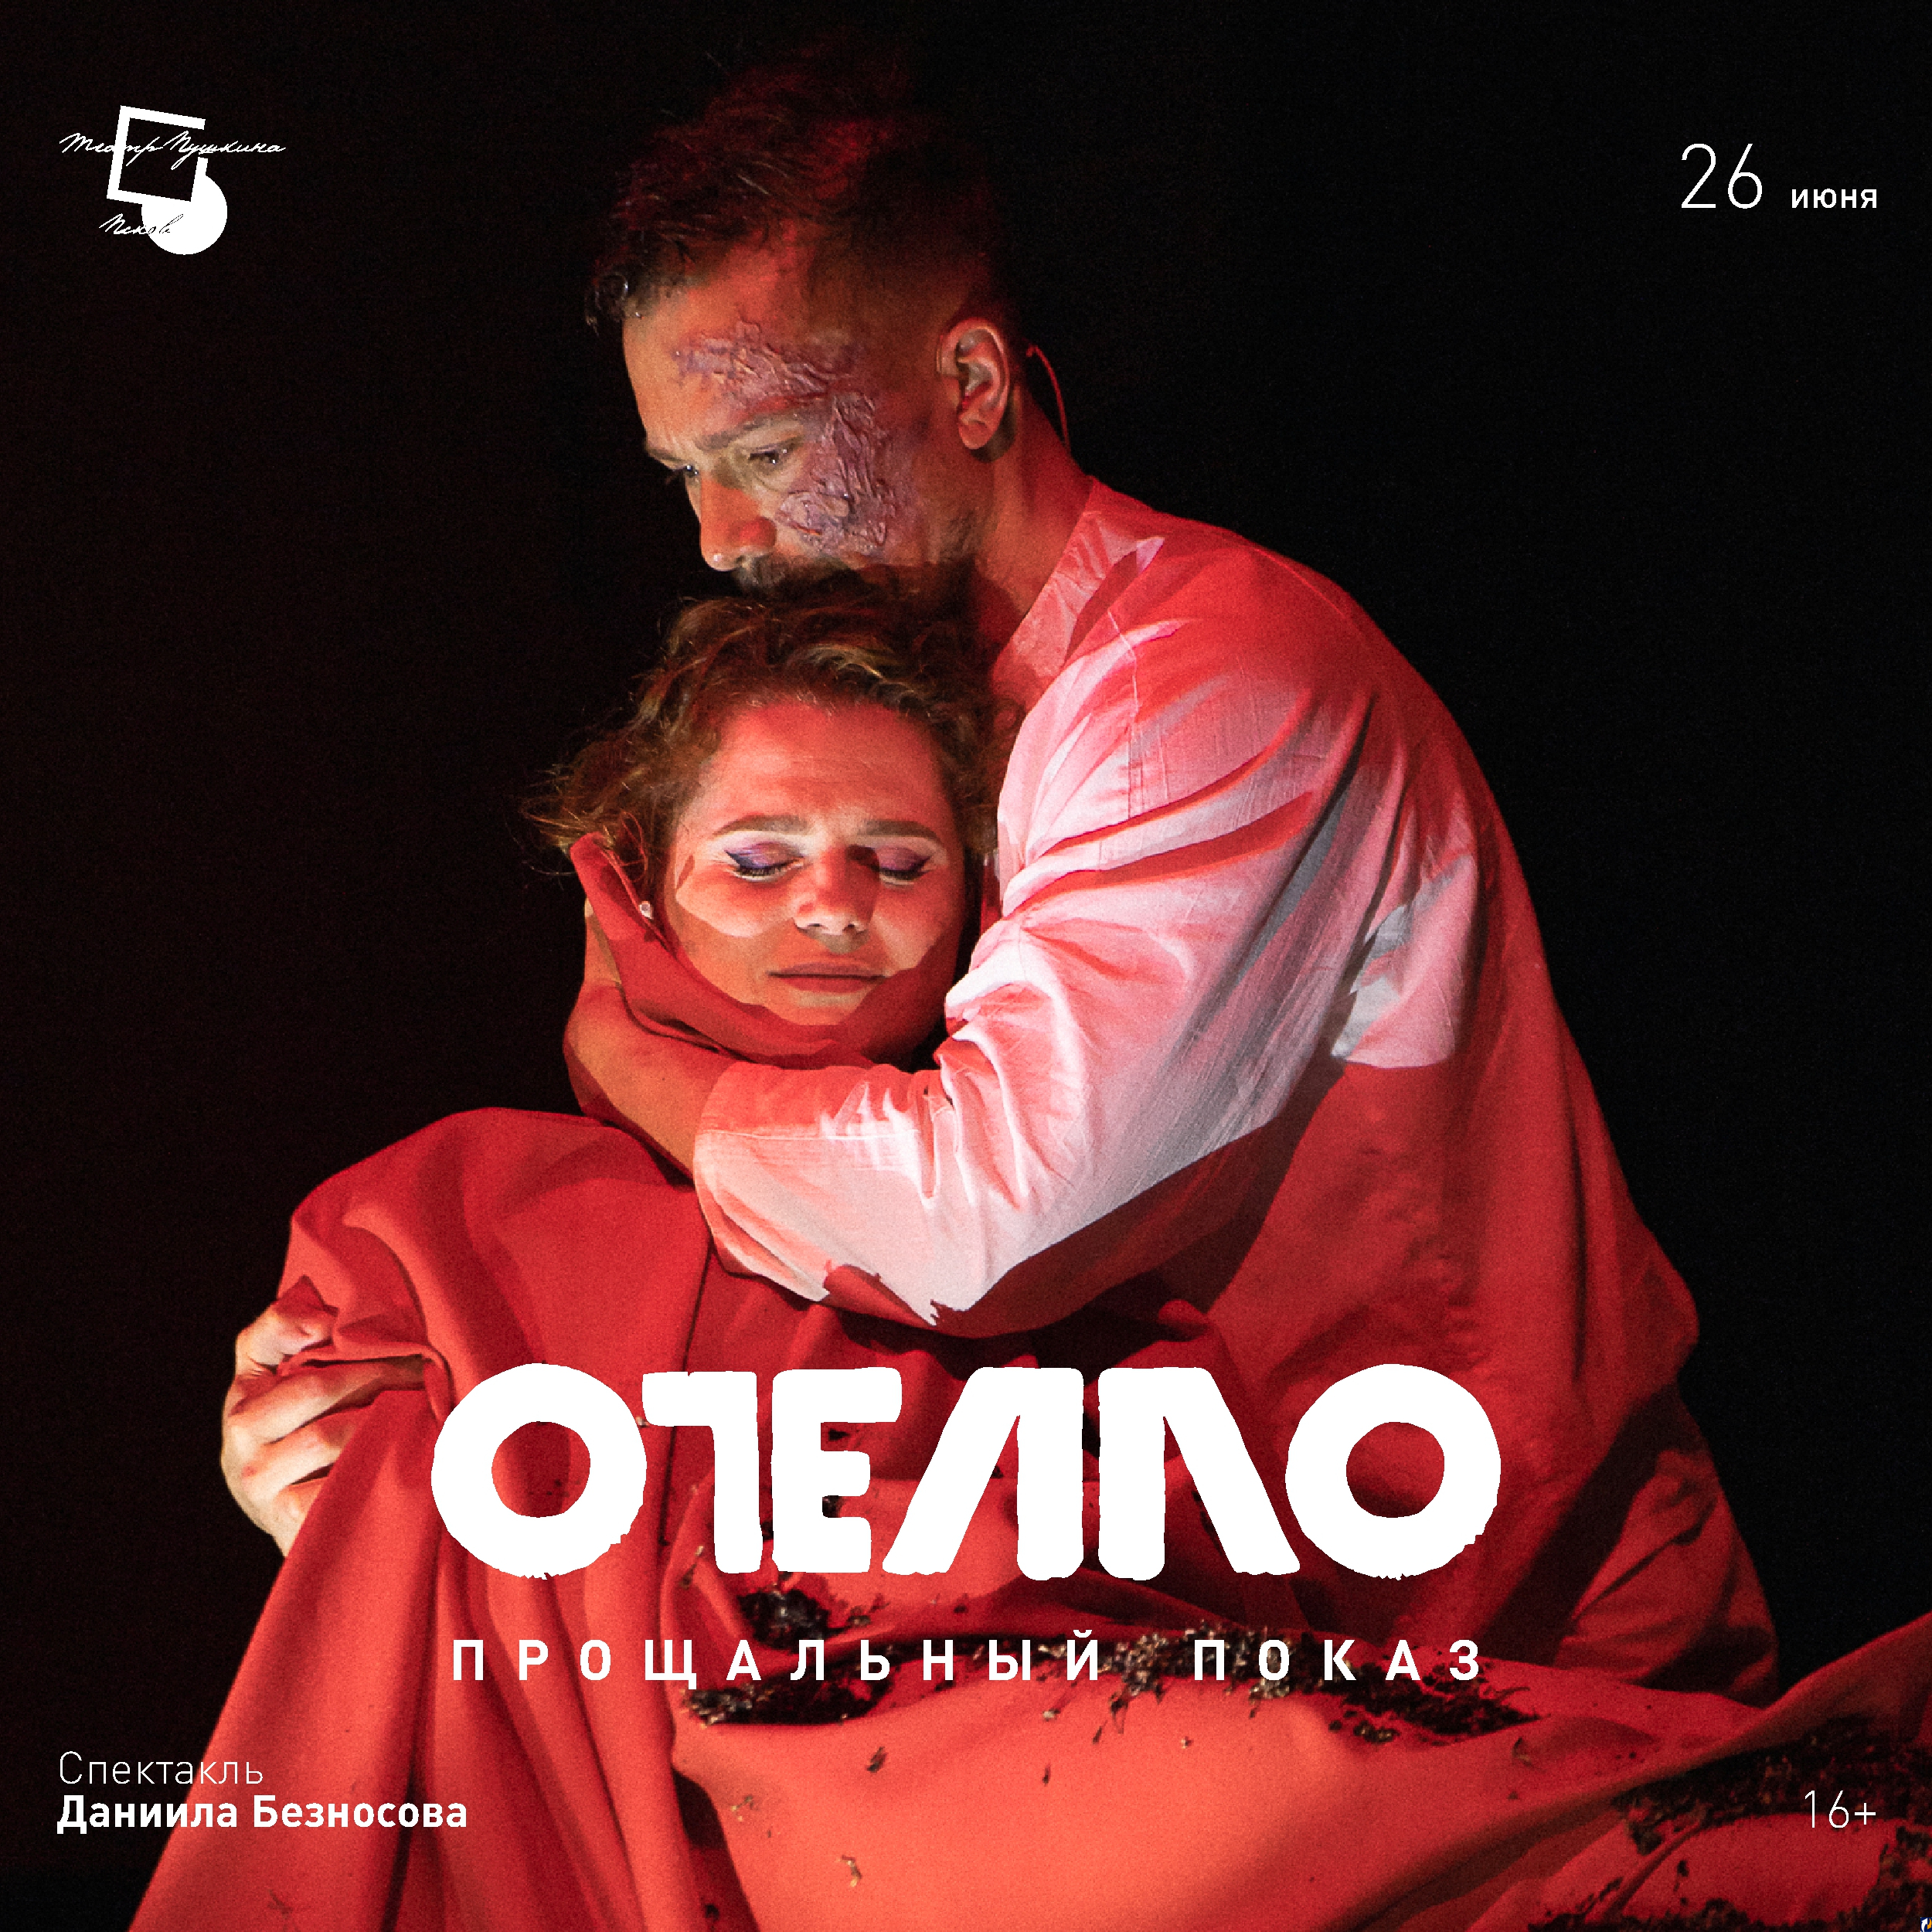 Сегодня состоится прощальный показ спектакля «Отелло» в Псковском театре драмы